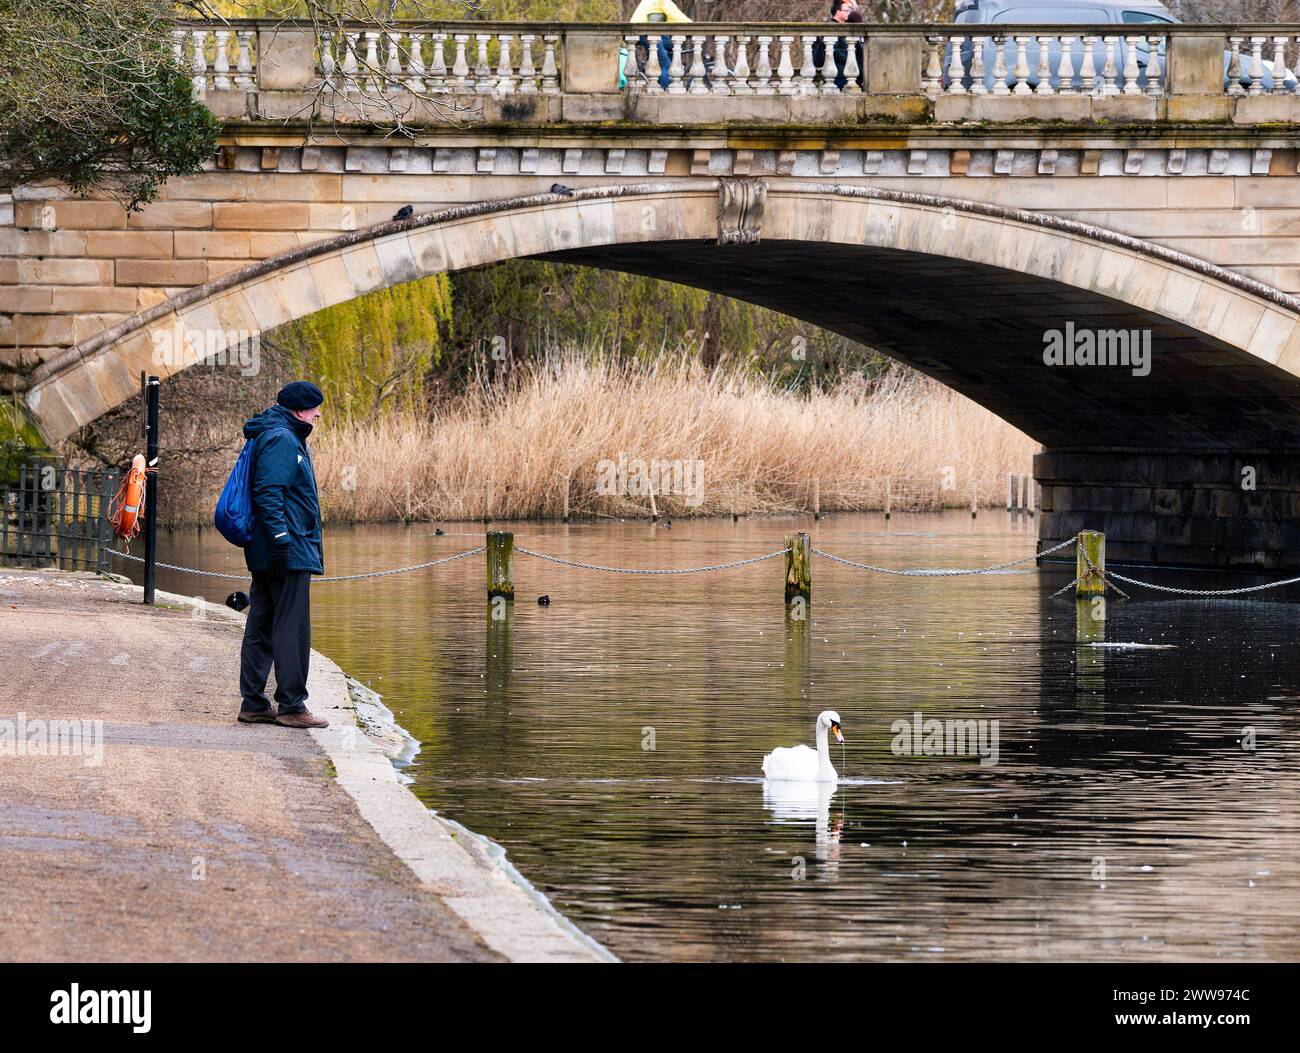 Ein Spaziergänger in den Hyde Park Gardens beobachtet einen Schwan, während der Verkehr über eine Brücke fährt. Die Stadt hat ruhige, ruhige Orte. Stockfoto